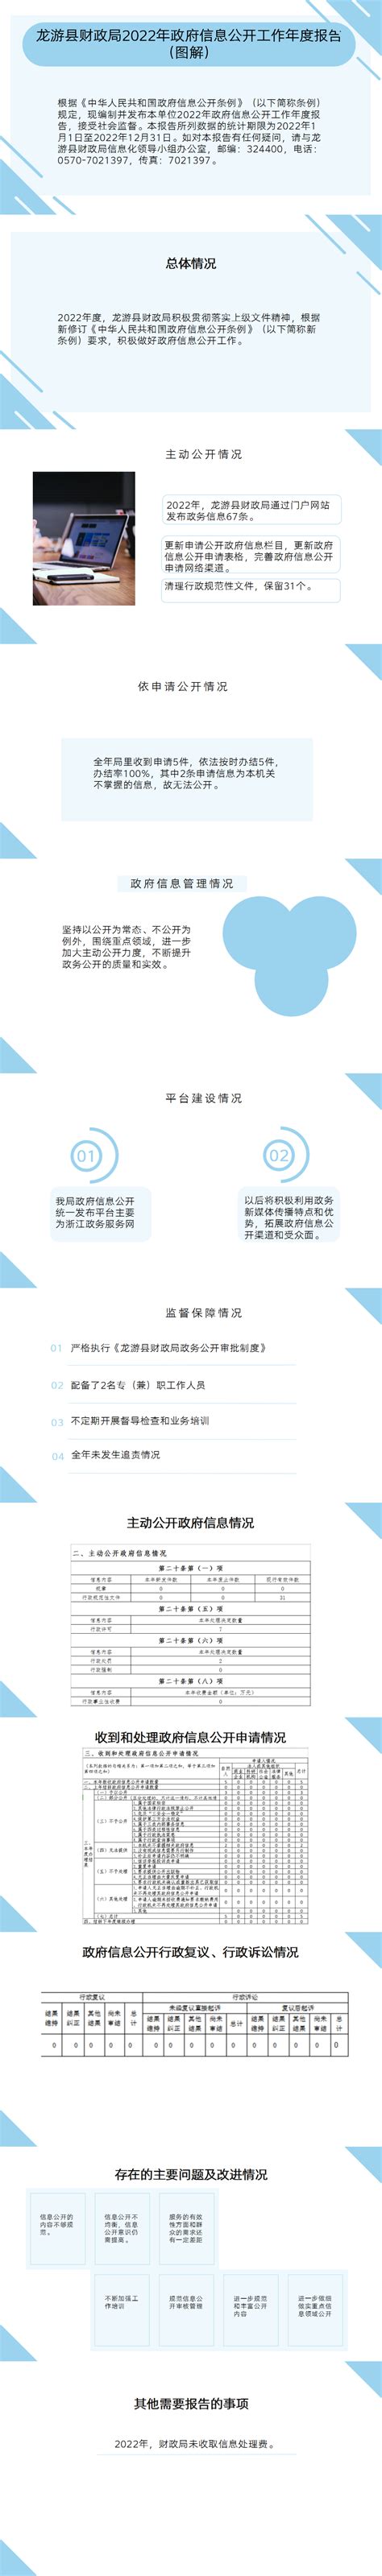 【图解】龙游县财政局2022年政府信息公开工作年度报告